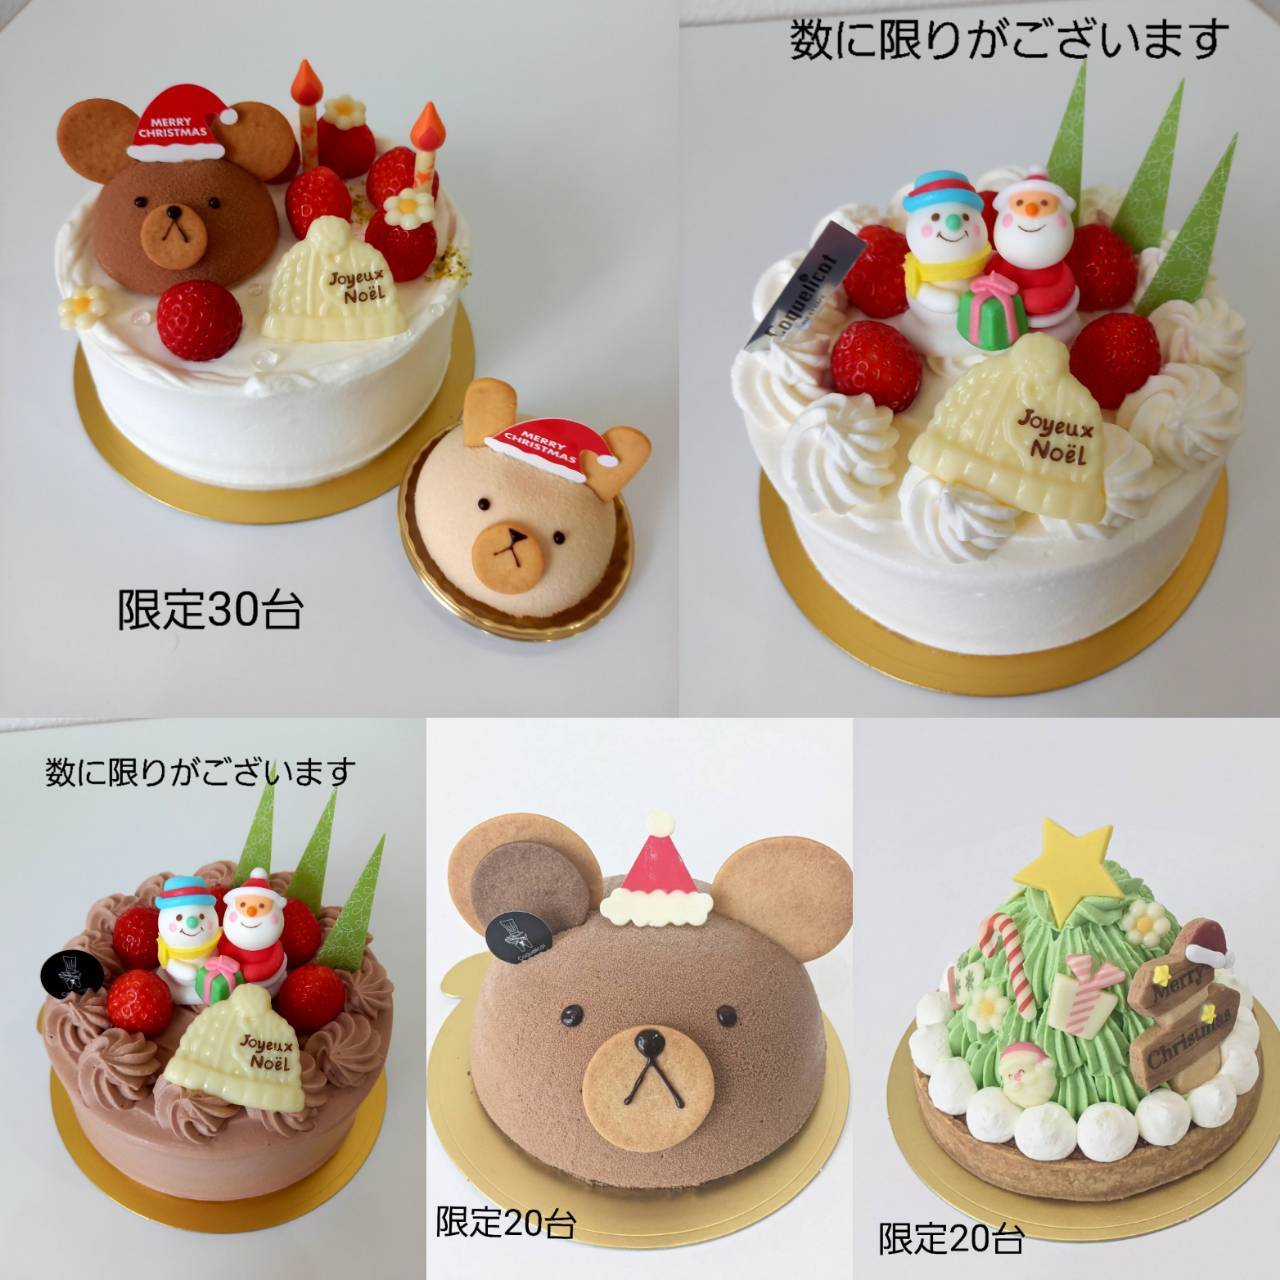 クリスマスケーキご予約について_c0218292_16363021.jpg